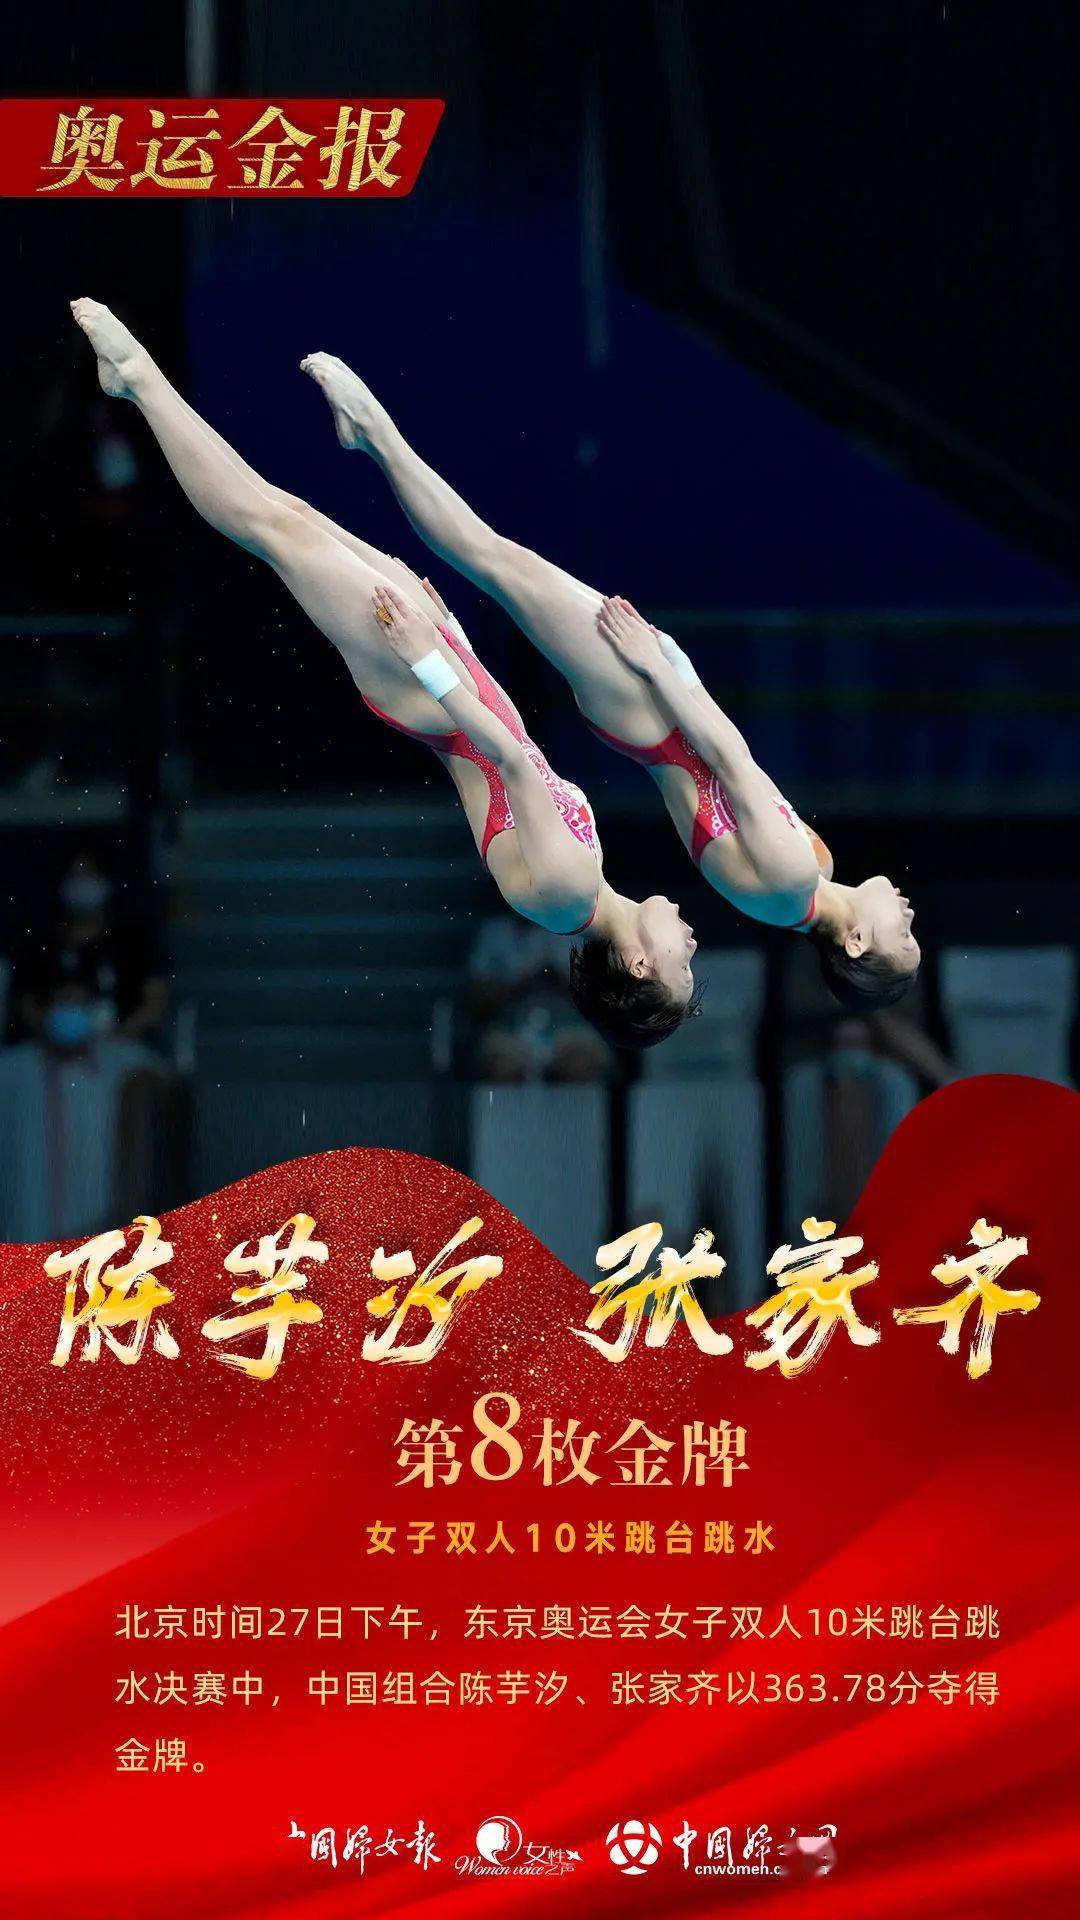 跳水女子双人10米台决赛中 中国选手陈芋汐,张家齐 夺得冠军 为中国